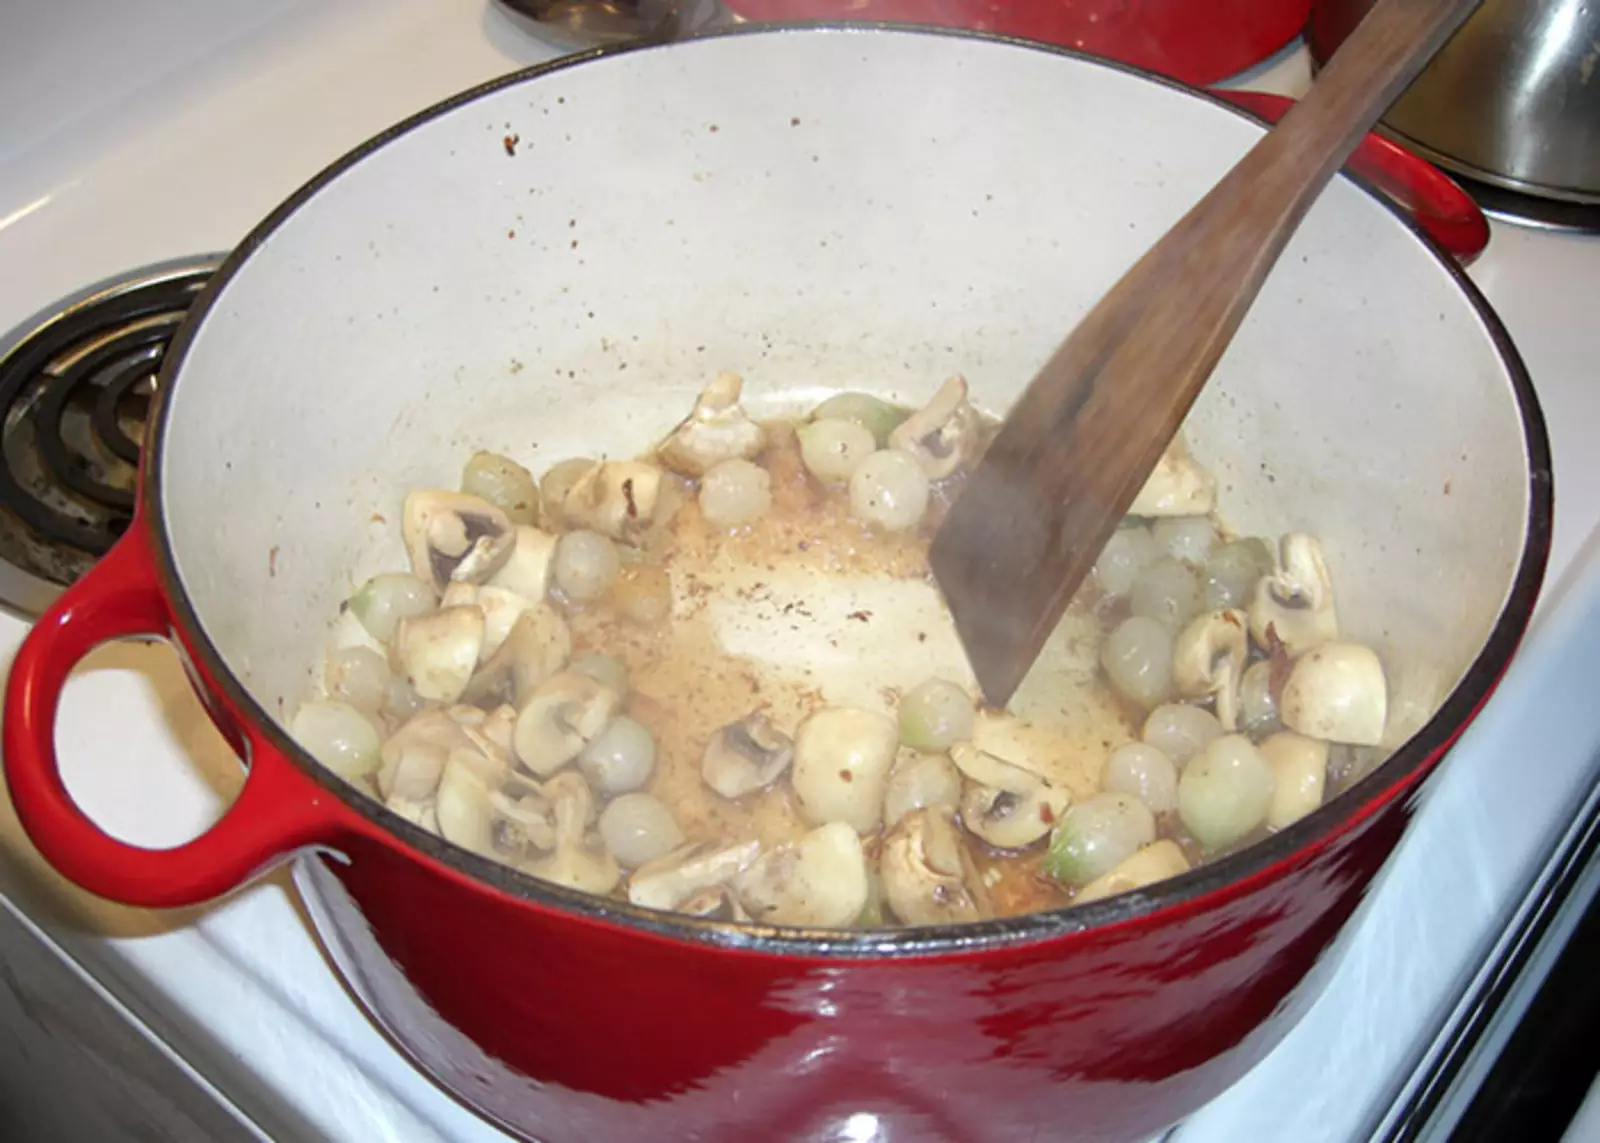 Если на сковороде есть остатки пищи, например, после приготовления мяса, овощей или грибов, залейте их овощным или мясным бульоном, соскоблите с посуды, а затем добавьте полученную жидкость в соус, суп или подливу. Это сделает их вкус более насыщенным.